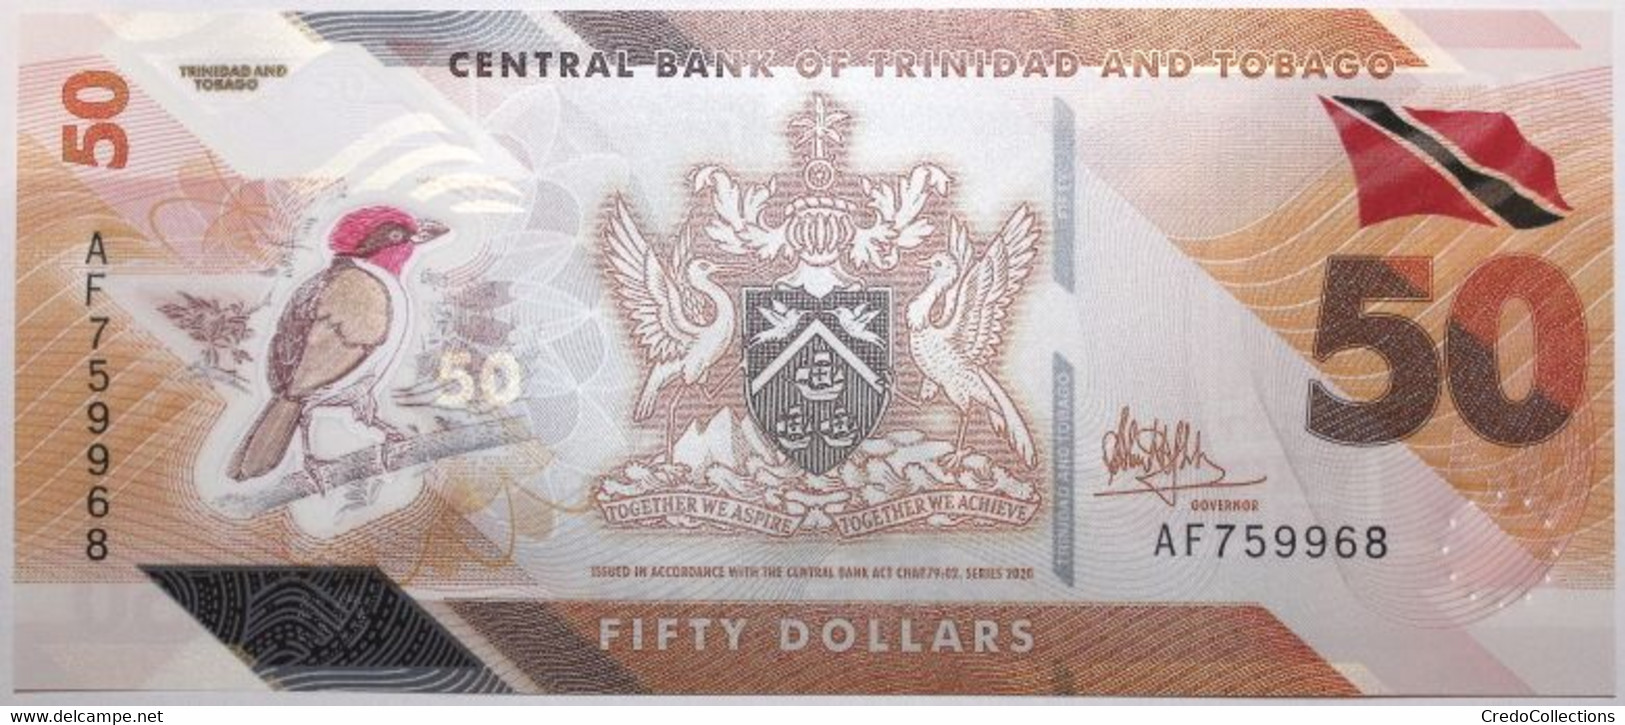 Trinitad Et Tobago - 50 Dollars - 2020 - PICK 64a - NEUF - Trinidad En Tobago